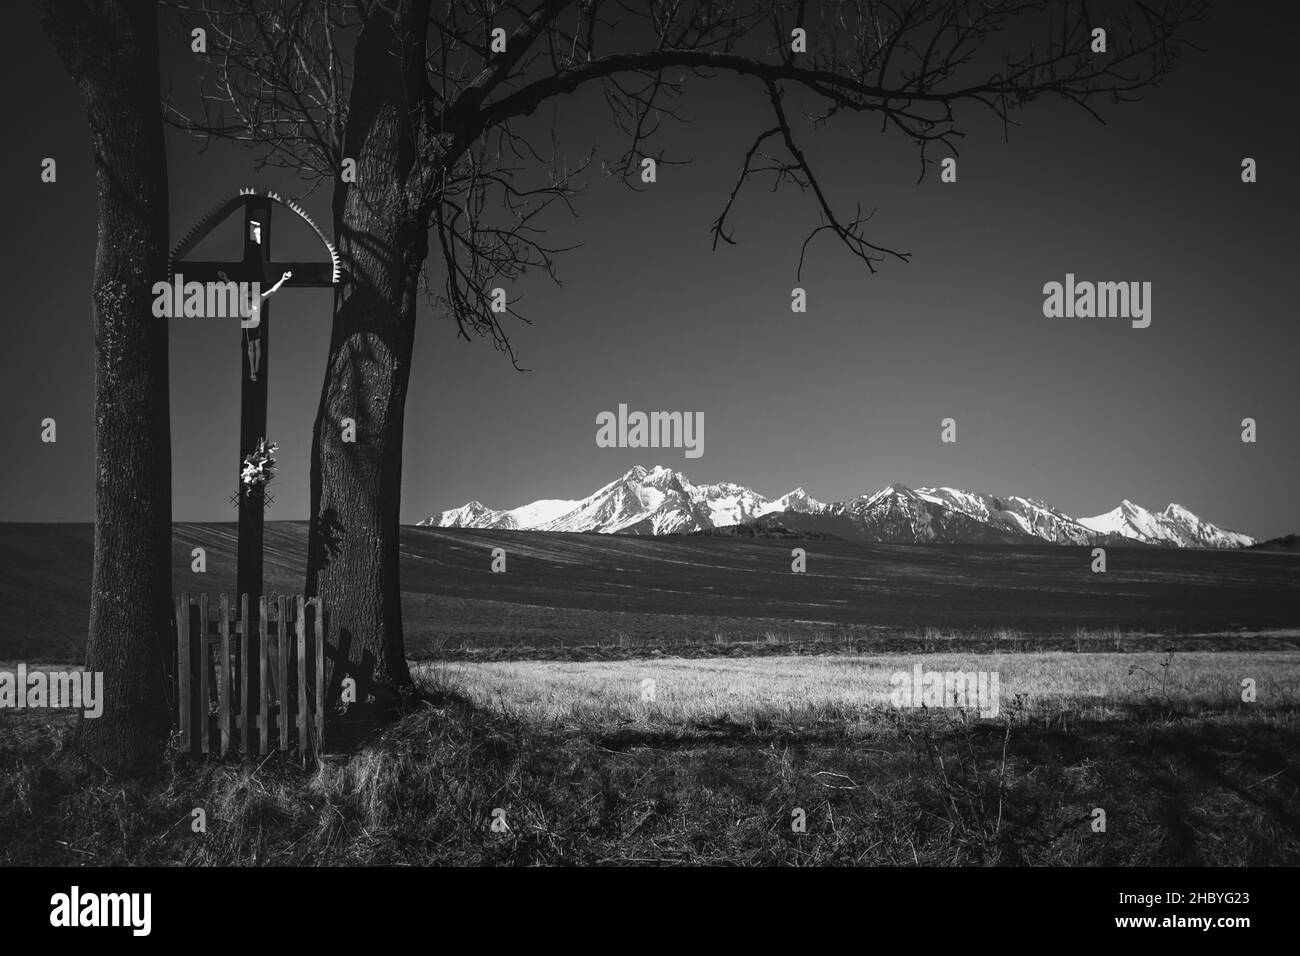 Strassenkreuze, Bäume, Felder, tatra Berge Hintergrund, s&w, Slowakei Stockfoto